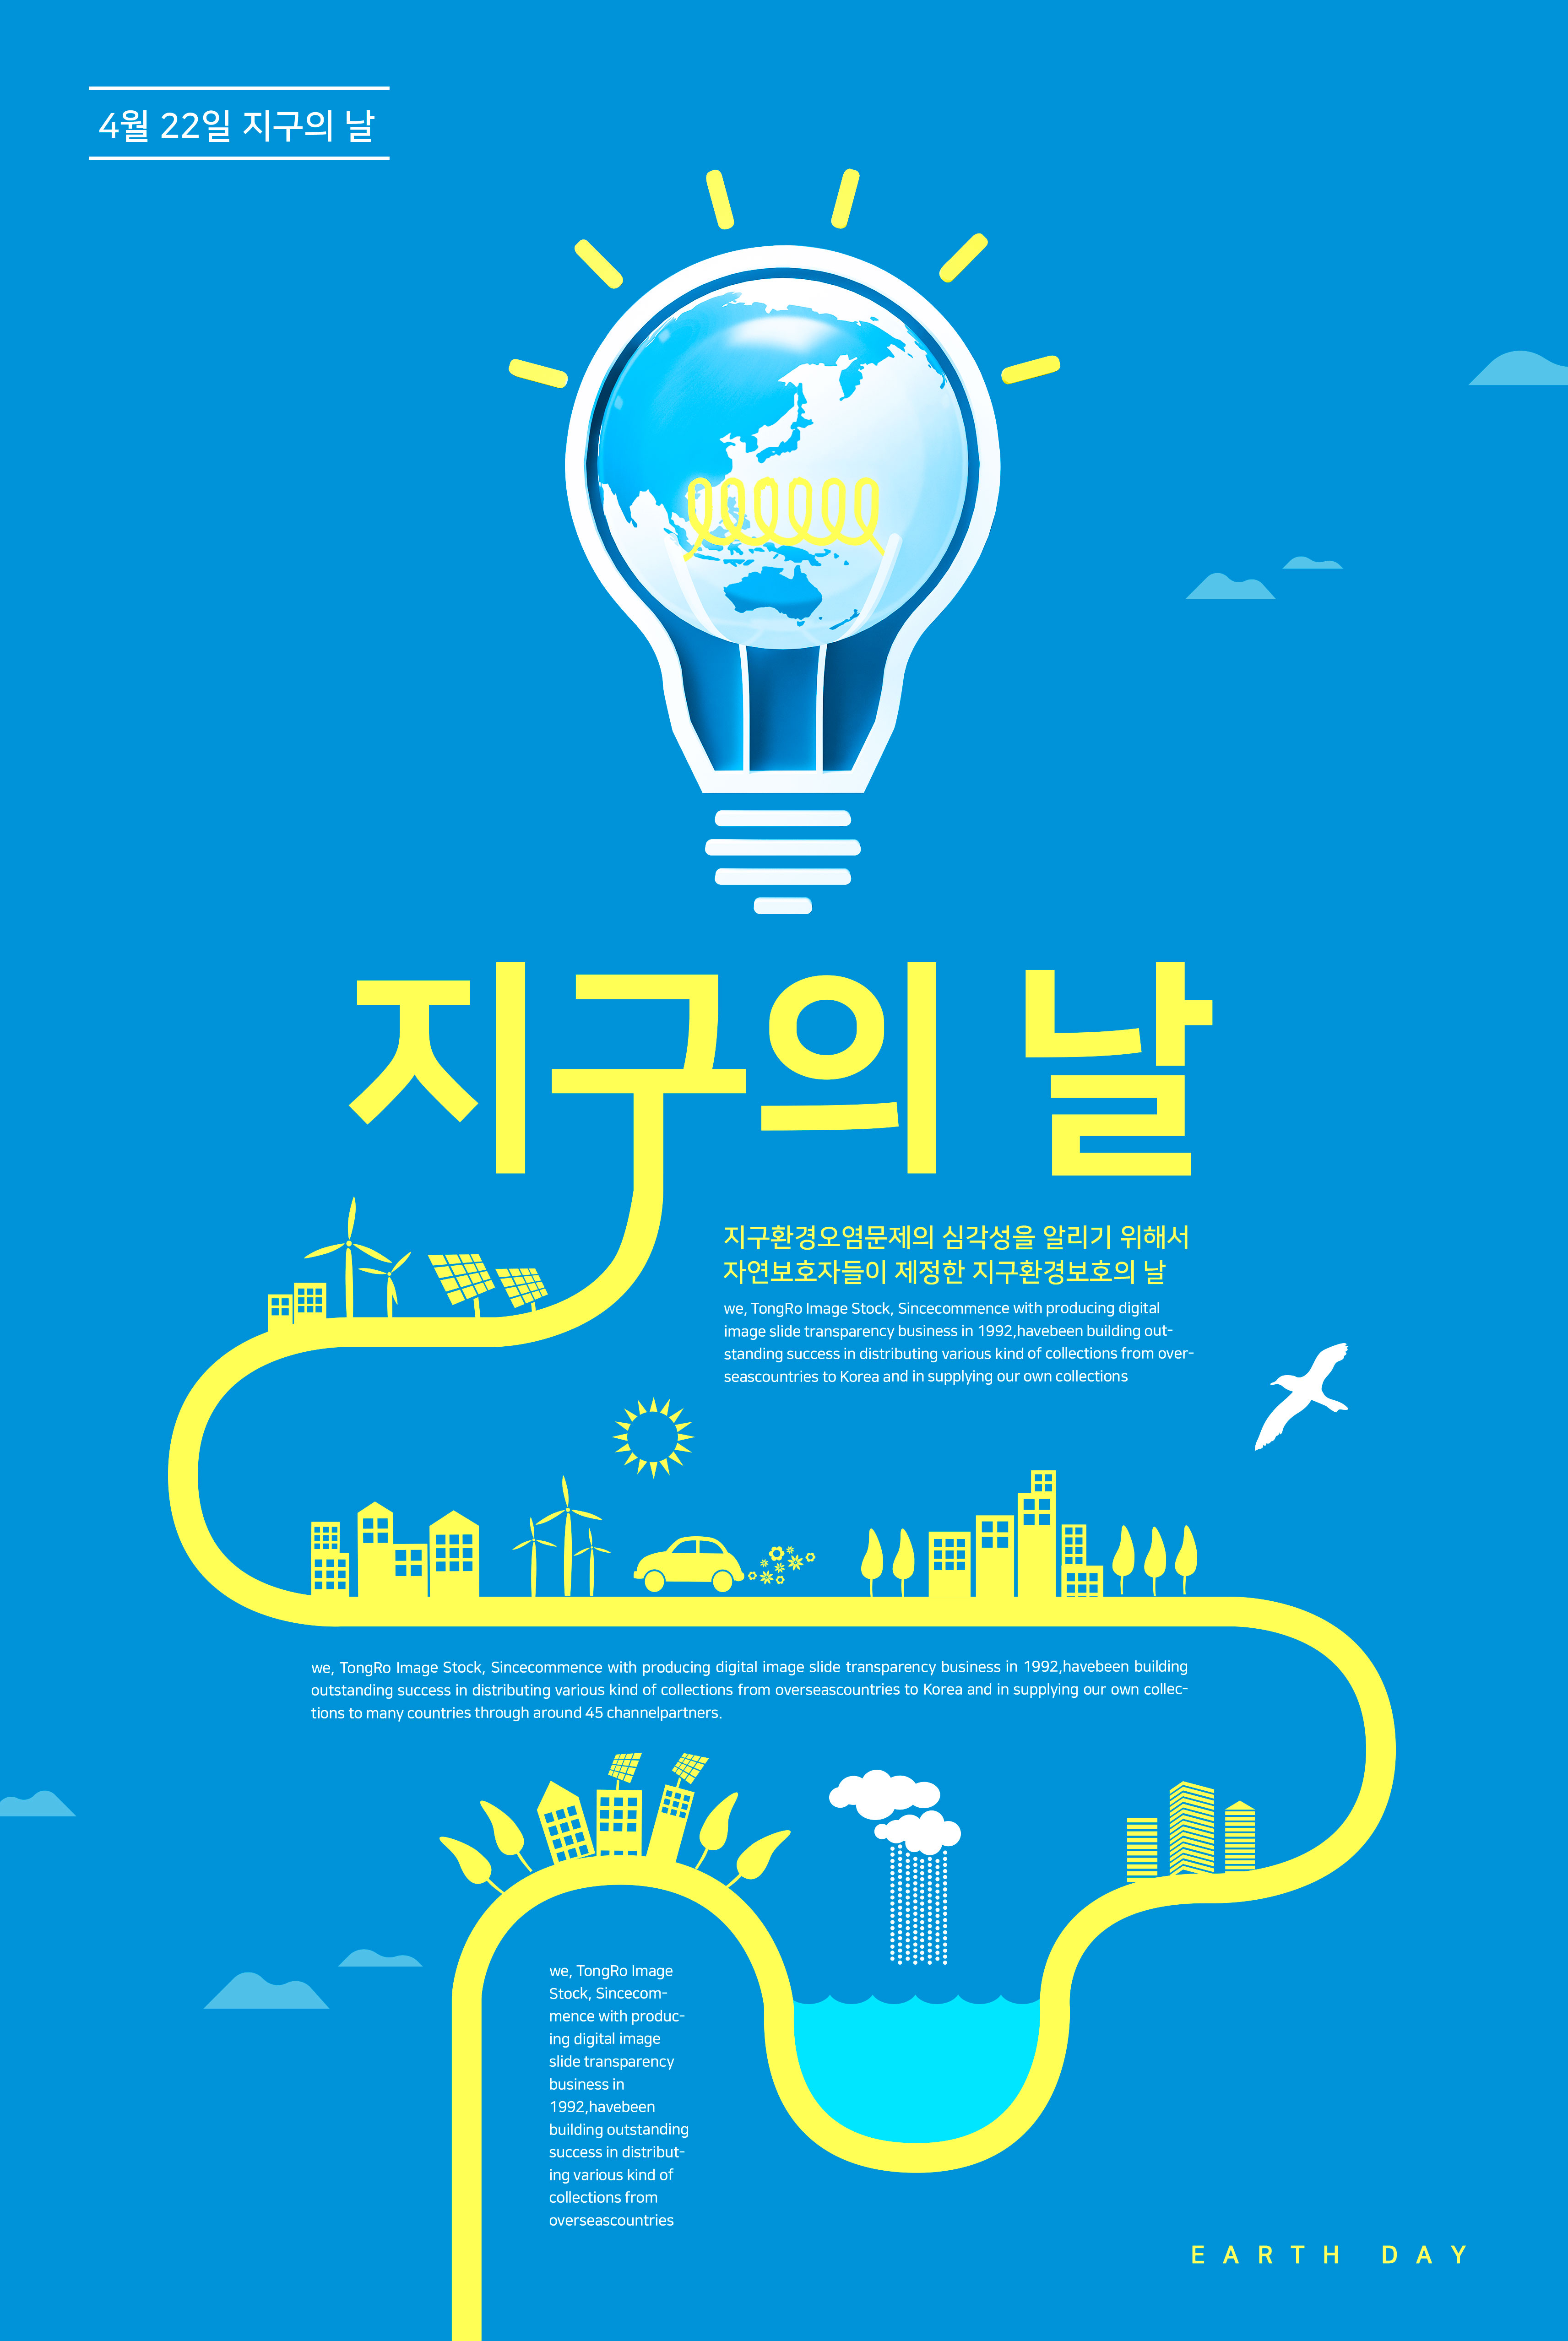 二次能源电能主题世界地球日宣传海报PSD素材蚂蚁素材精选psd素材插图